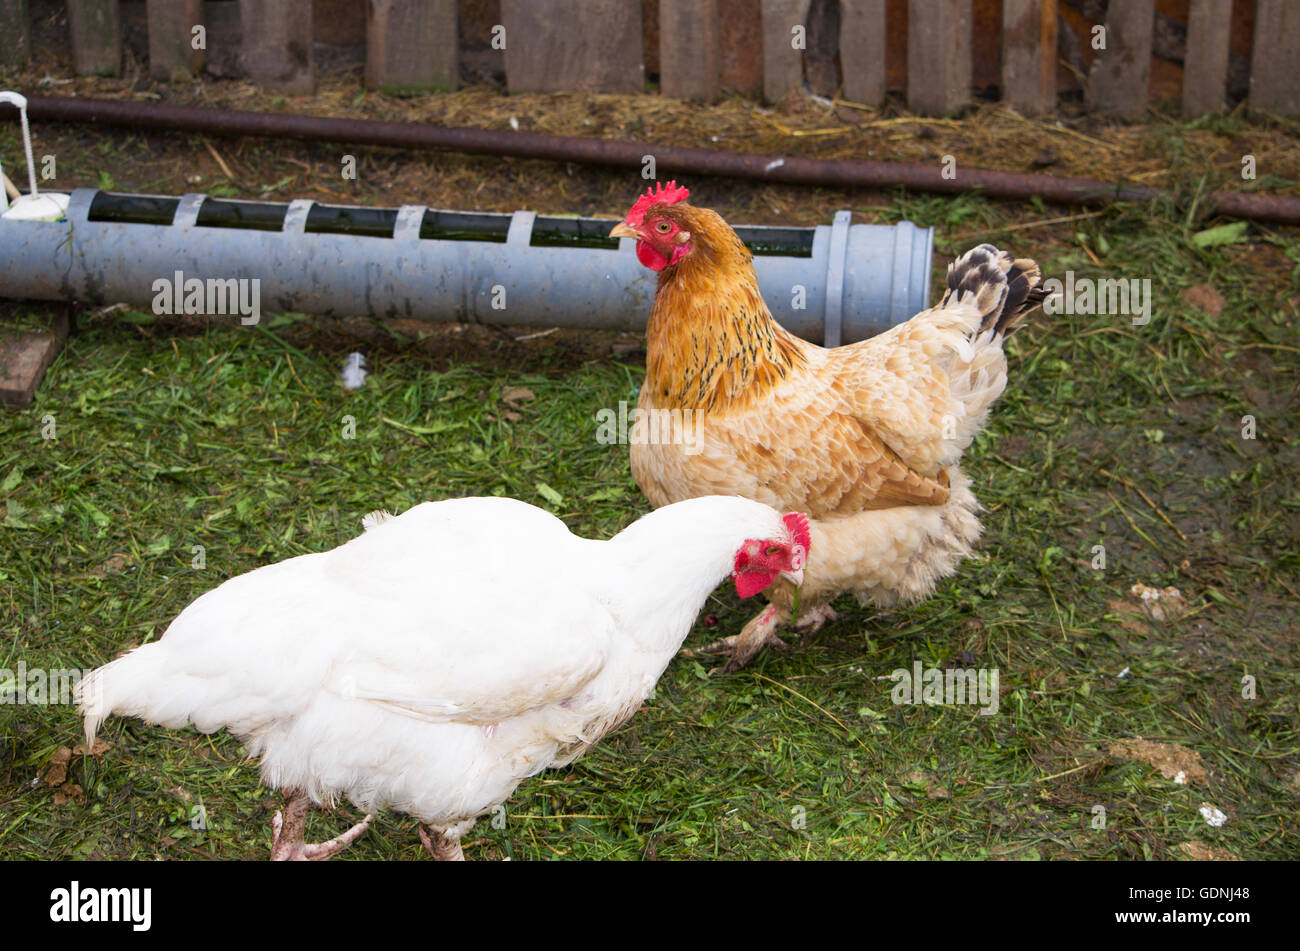 Aves de la gallina y el gallo, cerca de una casa de gallina,un pájaro, un gallinero, corral, un gallo, raza, economía, agricultura, vivienda, Foto de stock